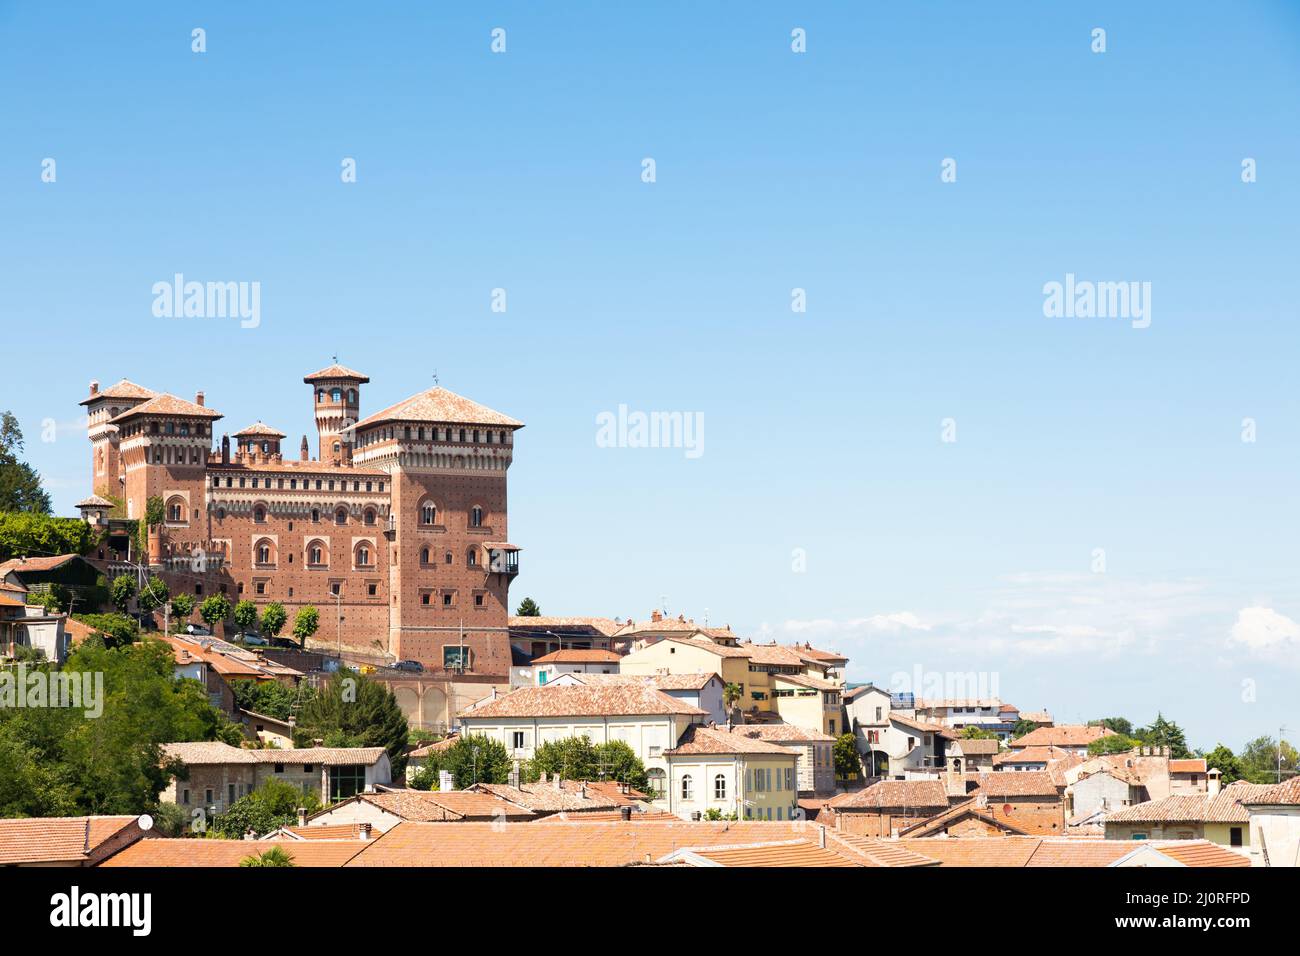 Cereseto Castle - Castello di Cereseto - Monferrato area in Piedmont region, Italy Stock Photo